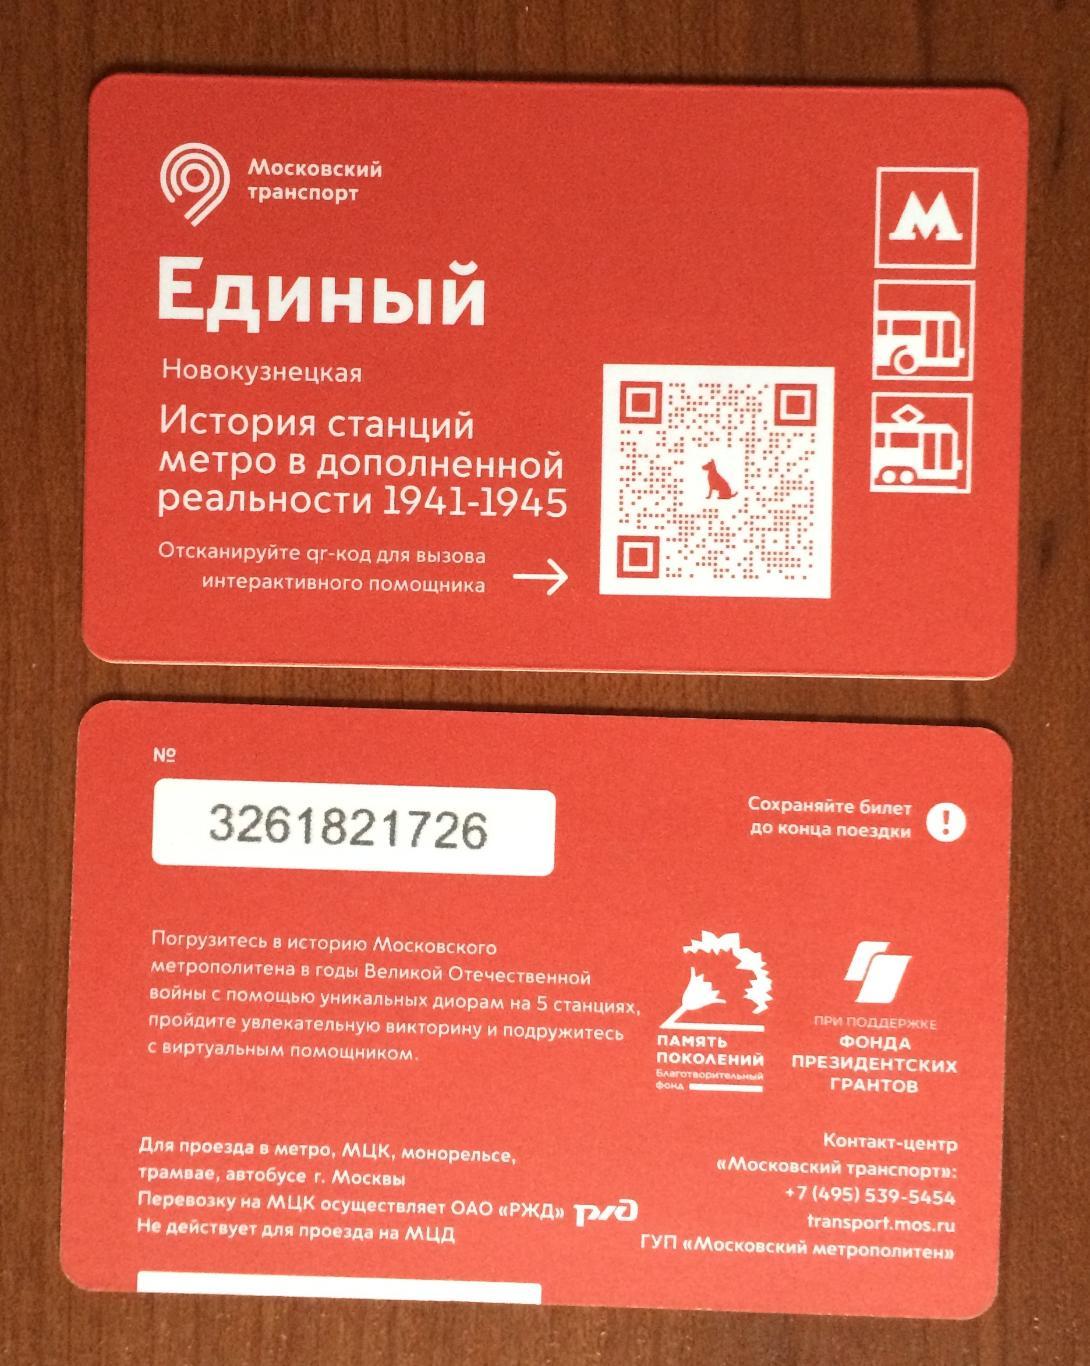 Билет Метро Единый История станций метро 1941-1945 НОВОКУЗНЕЦКАЯ 2022 год